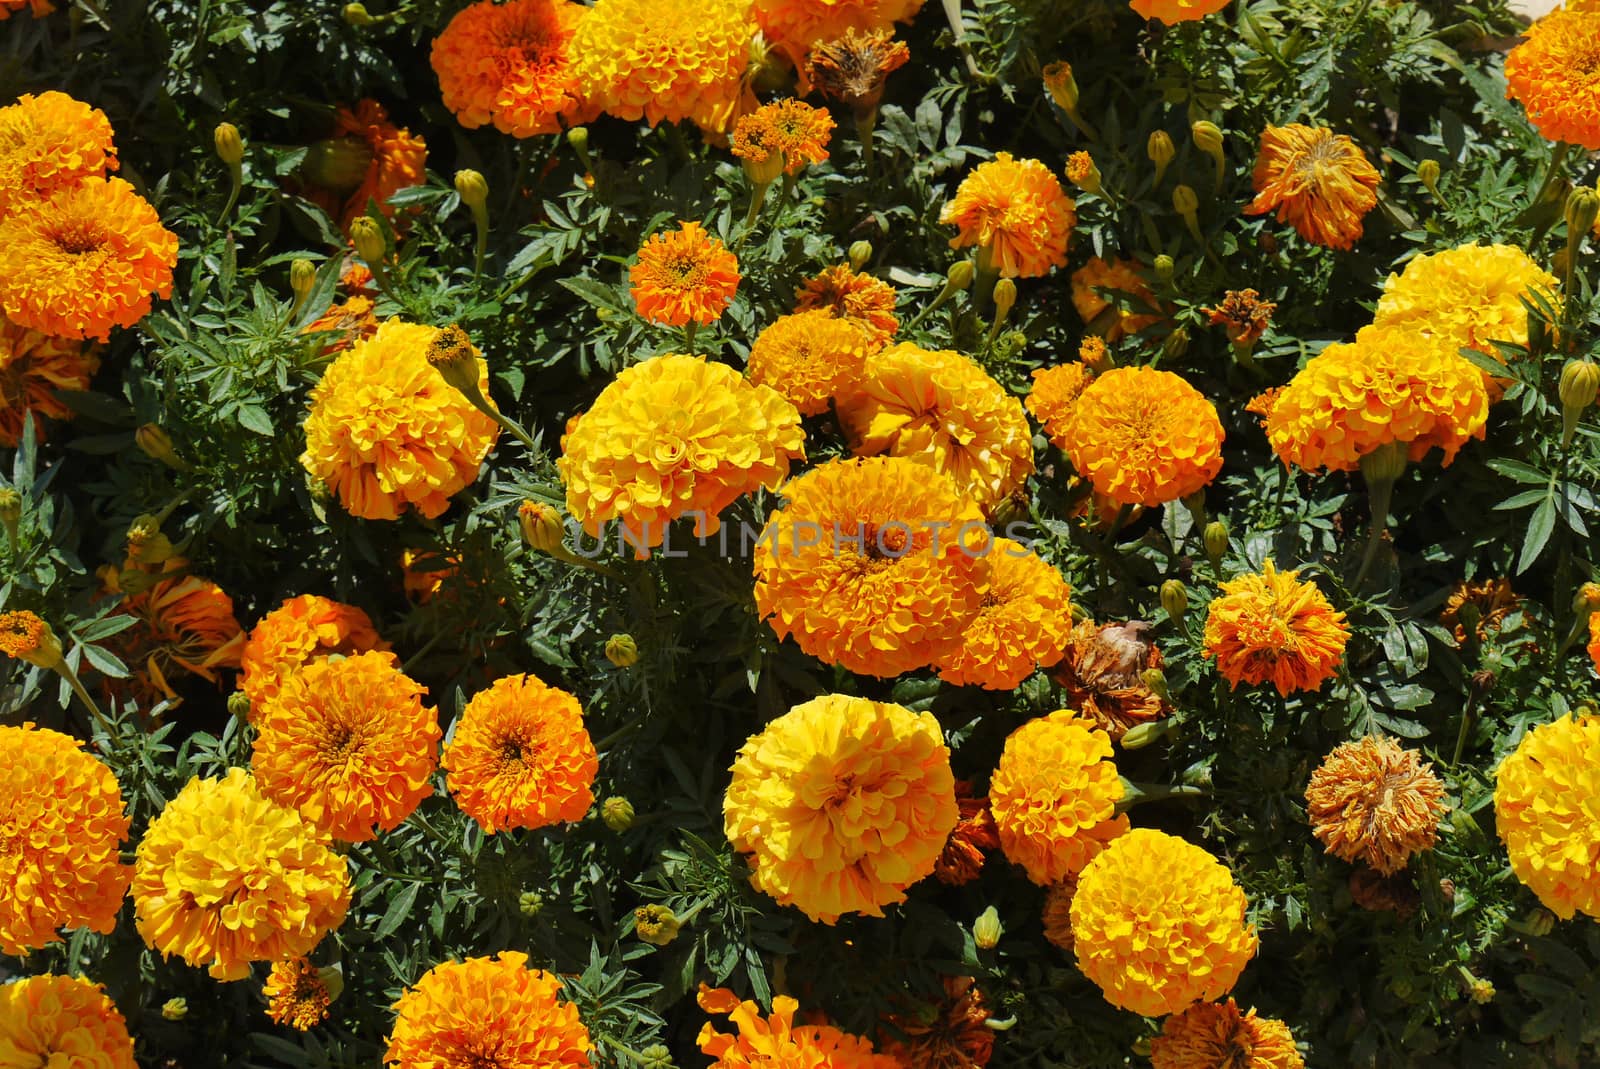 orange flowers of marigolds in dense greenery in summer